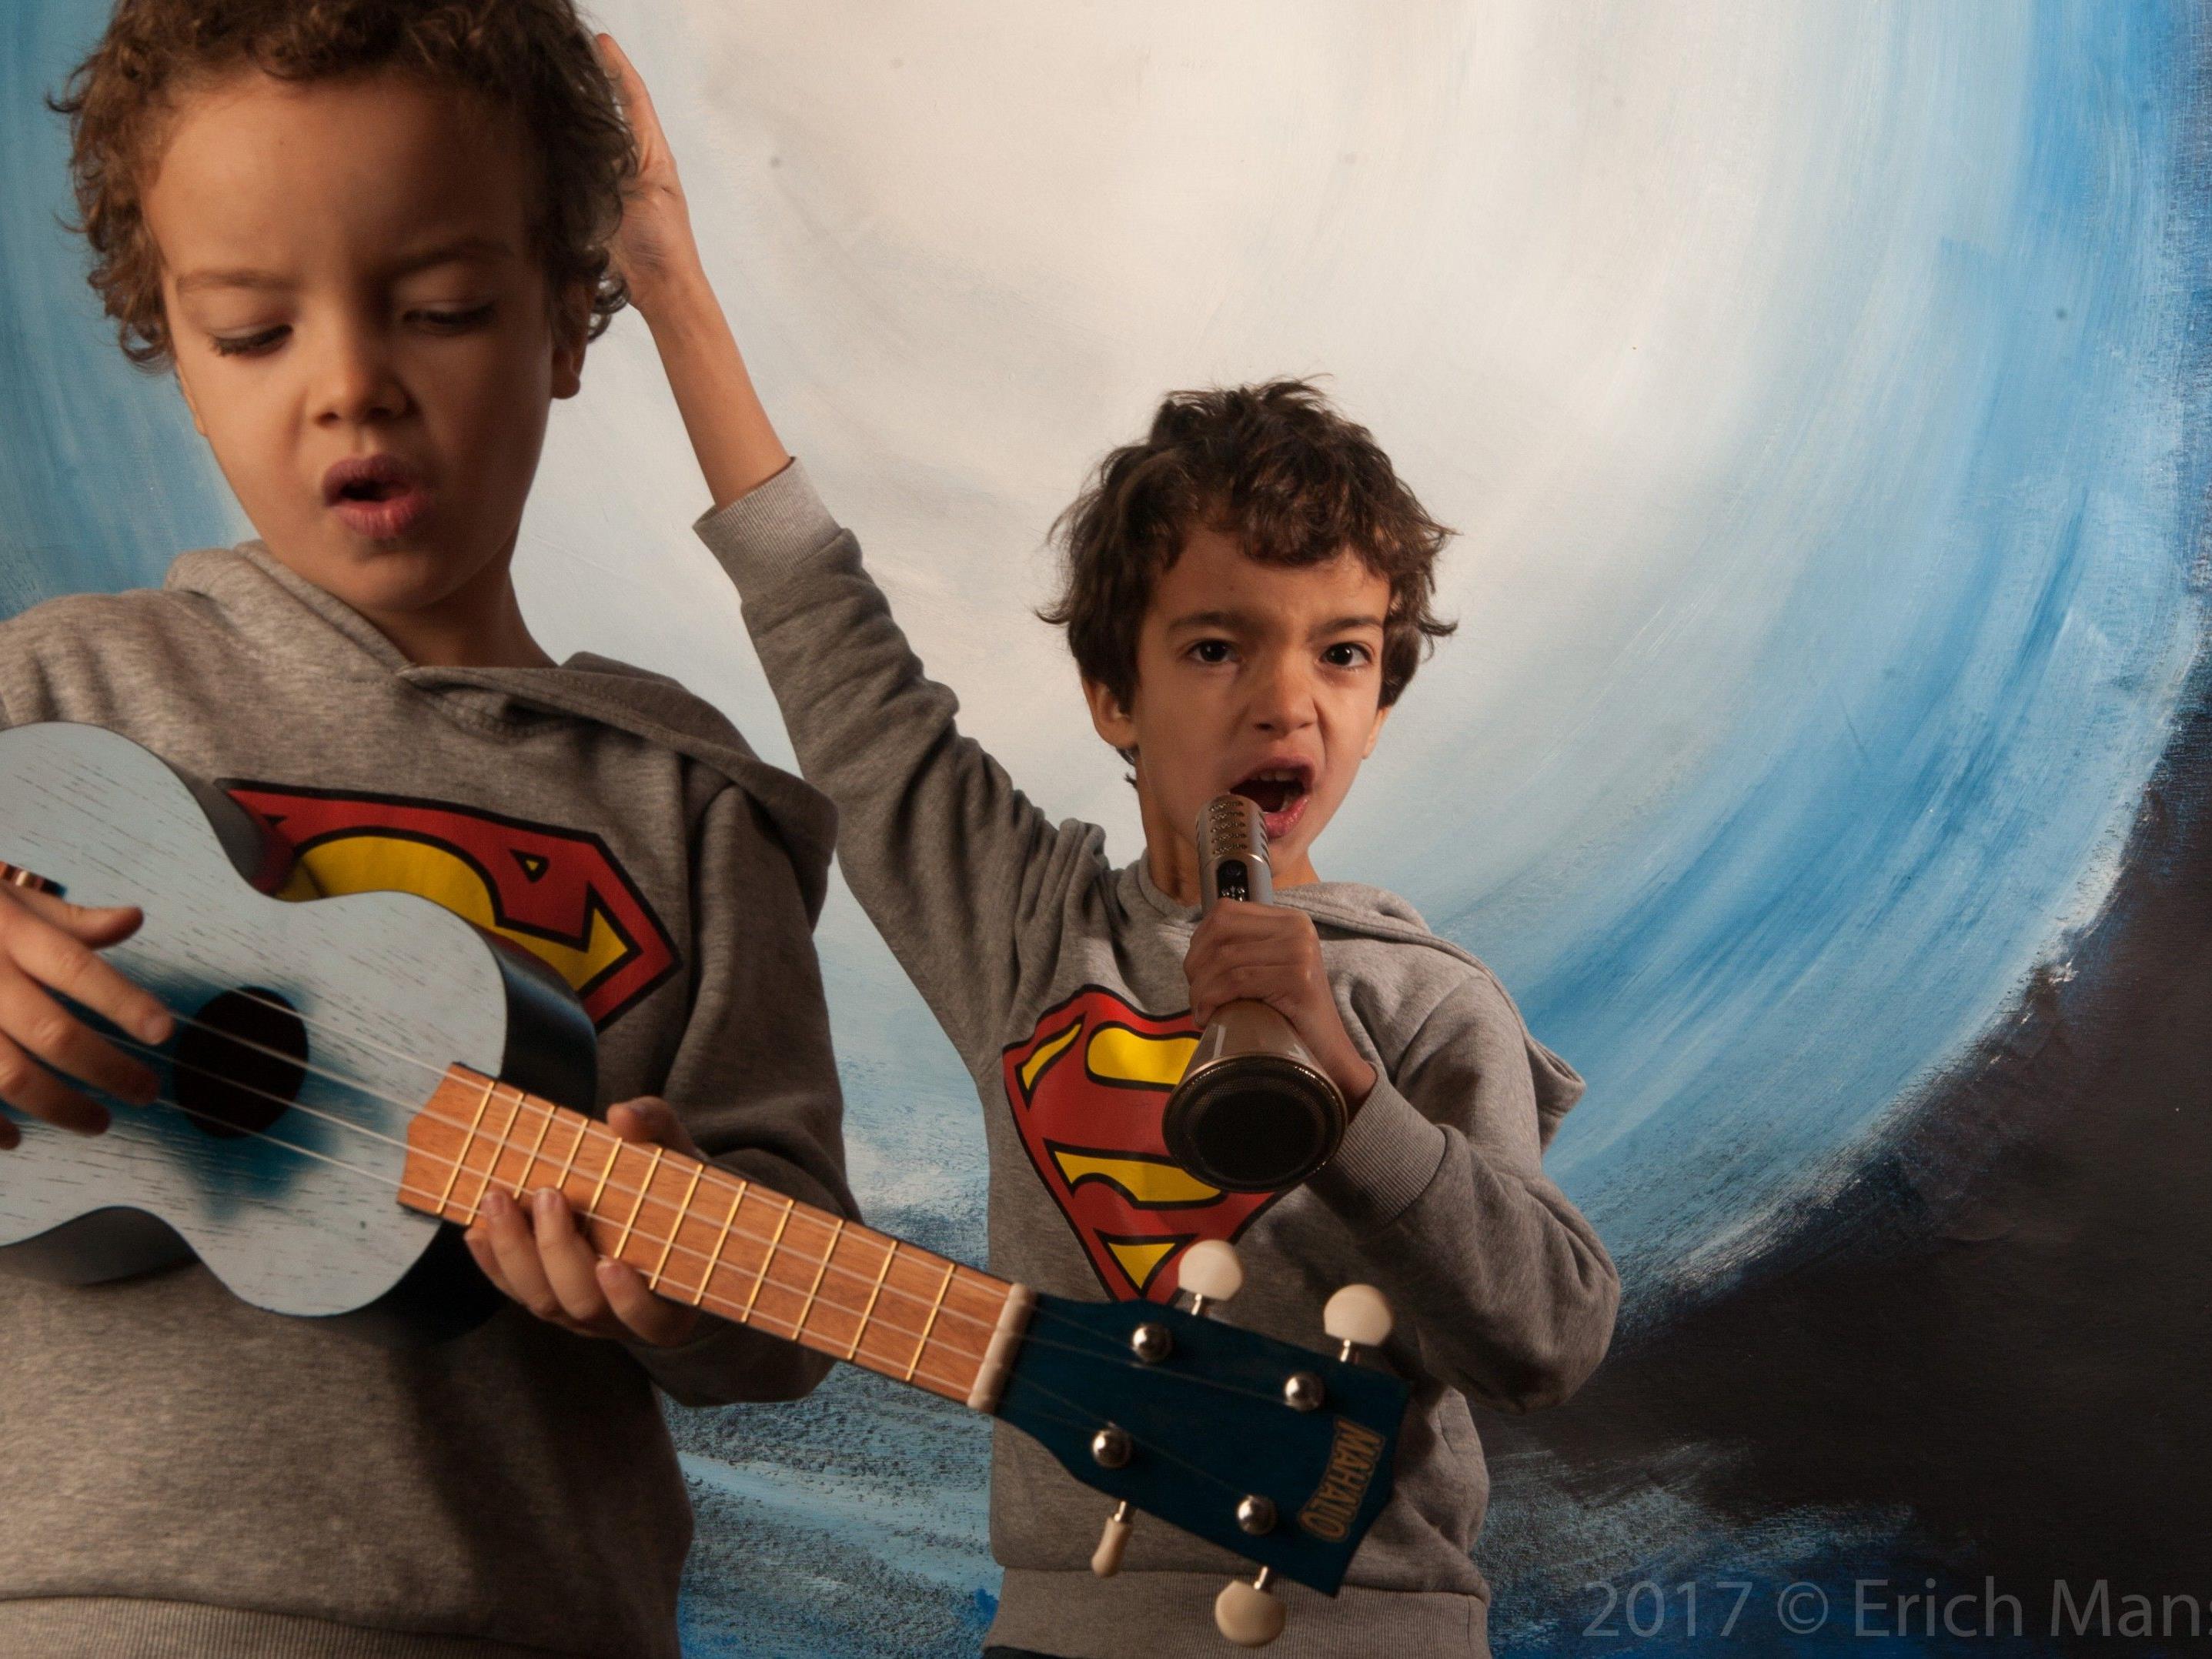 Kinder ab acht Jahren können bald Erfahrungen auf der Bühne in Gesang und Tanz sammeln